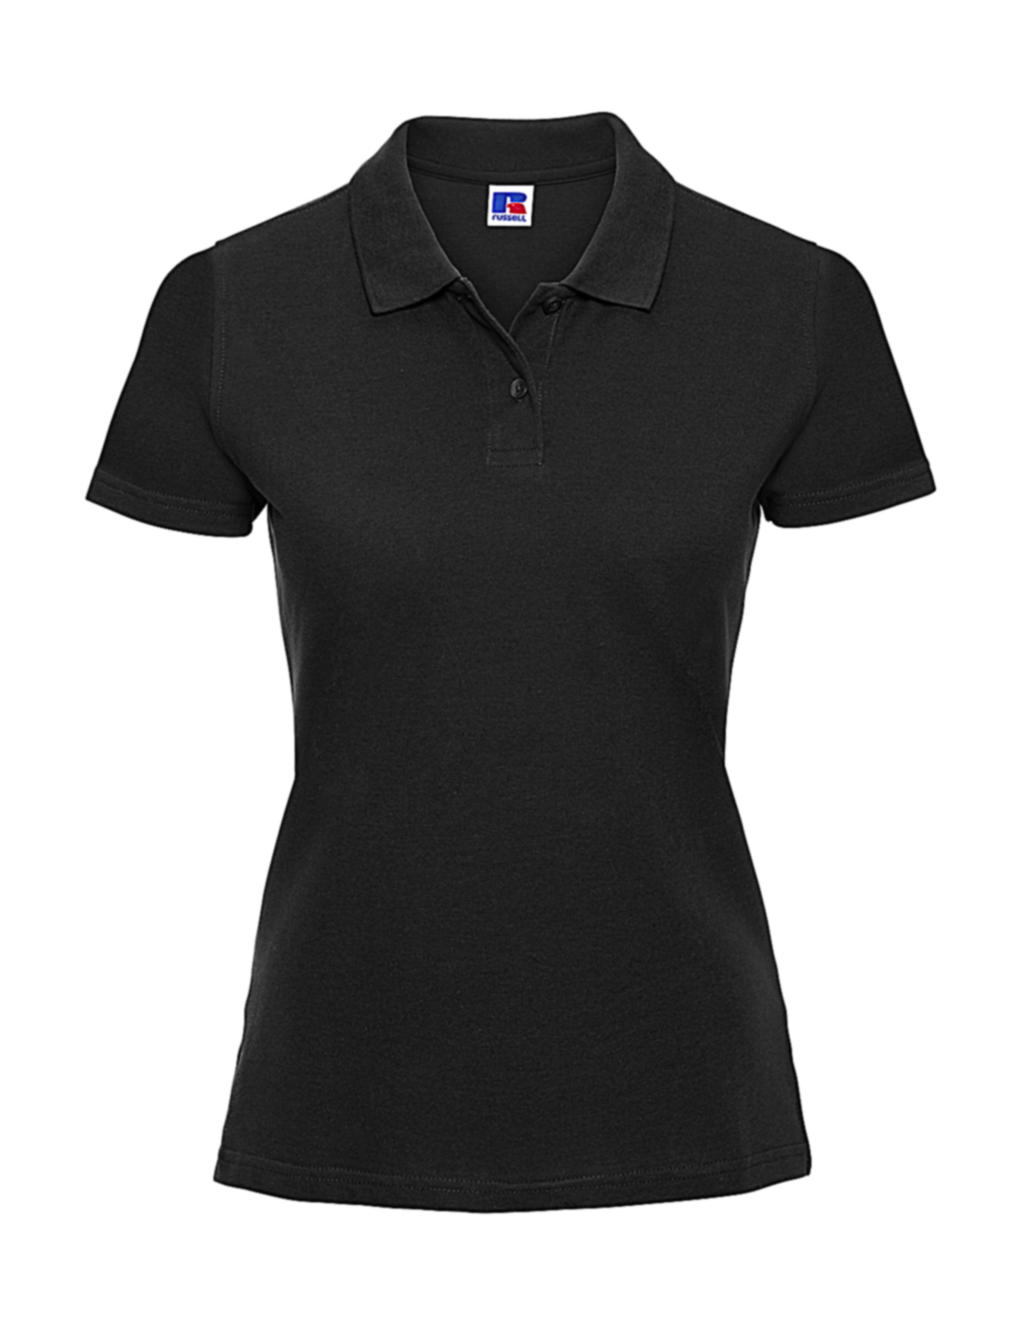  Ladies Classic Cotton Polo in Farbe Black